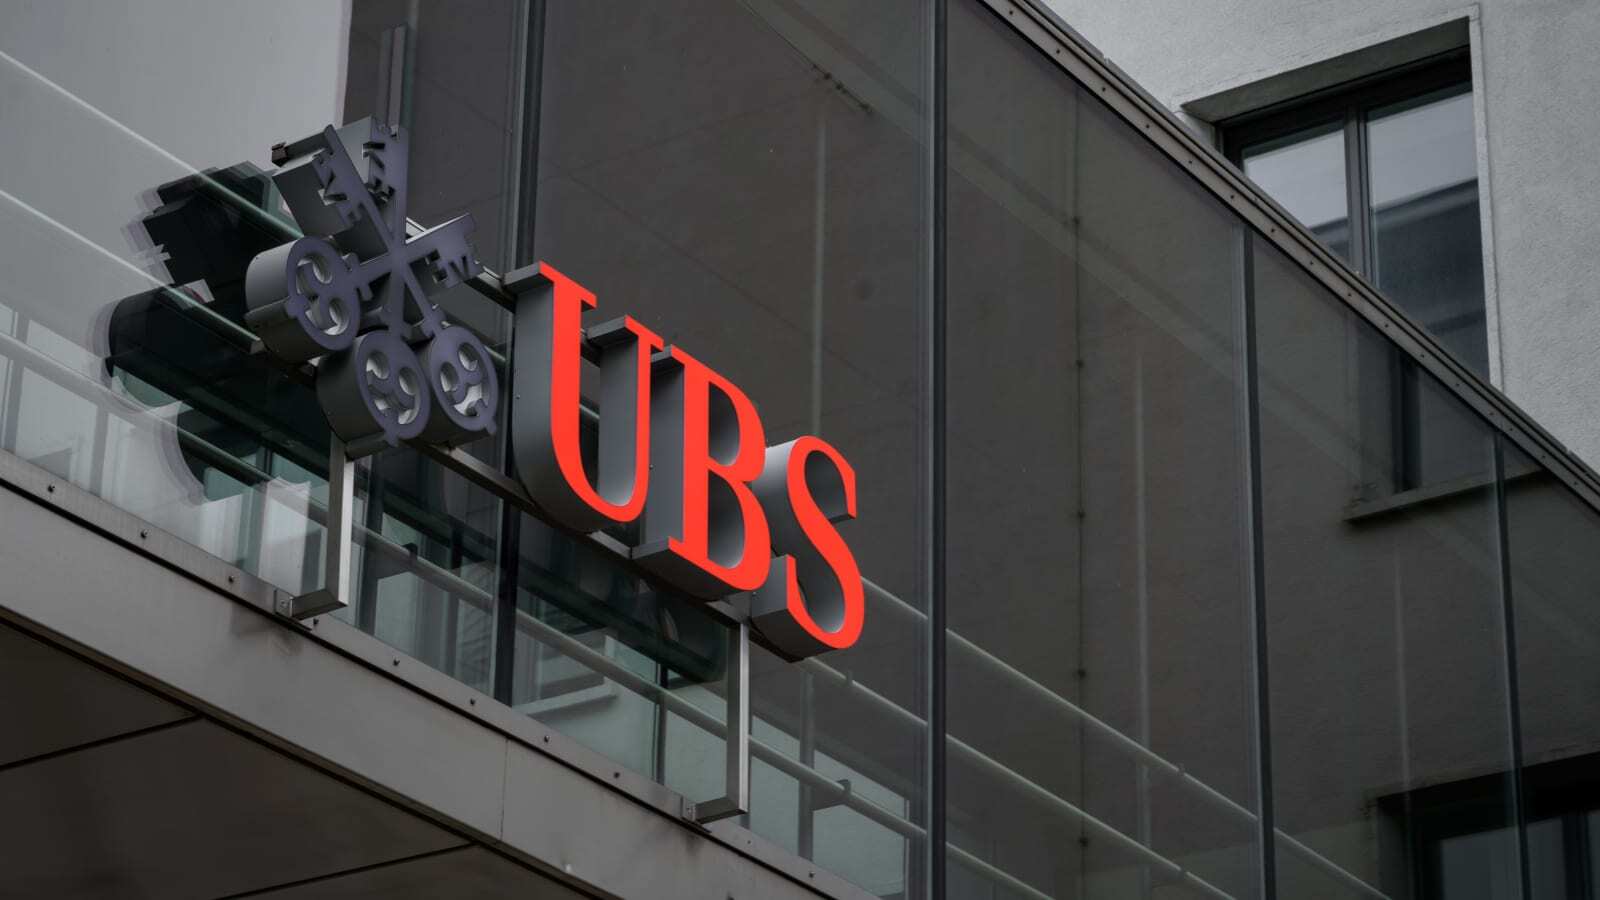 Ngân hàng lớn nhất của Thụy Sĩ UBS cảnh báo 